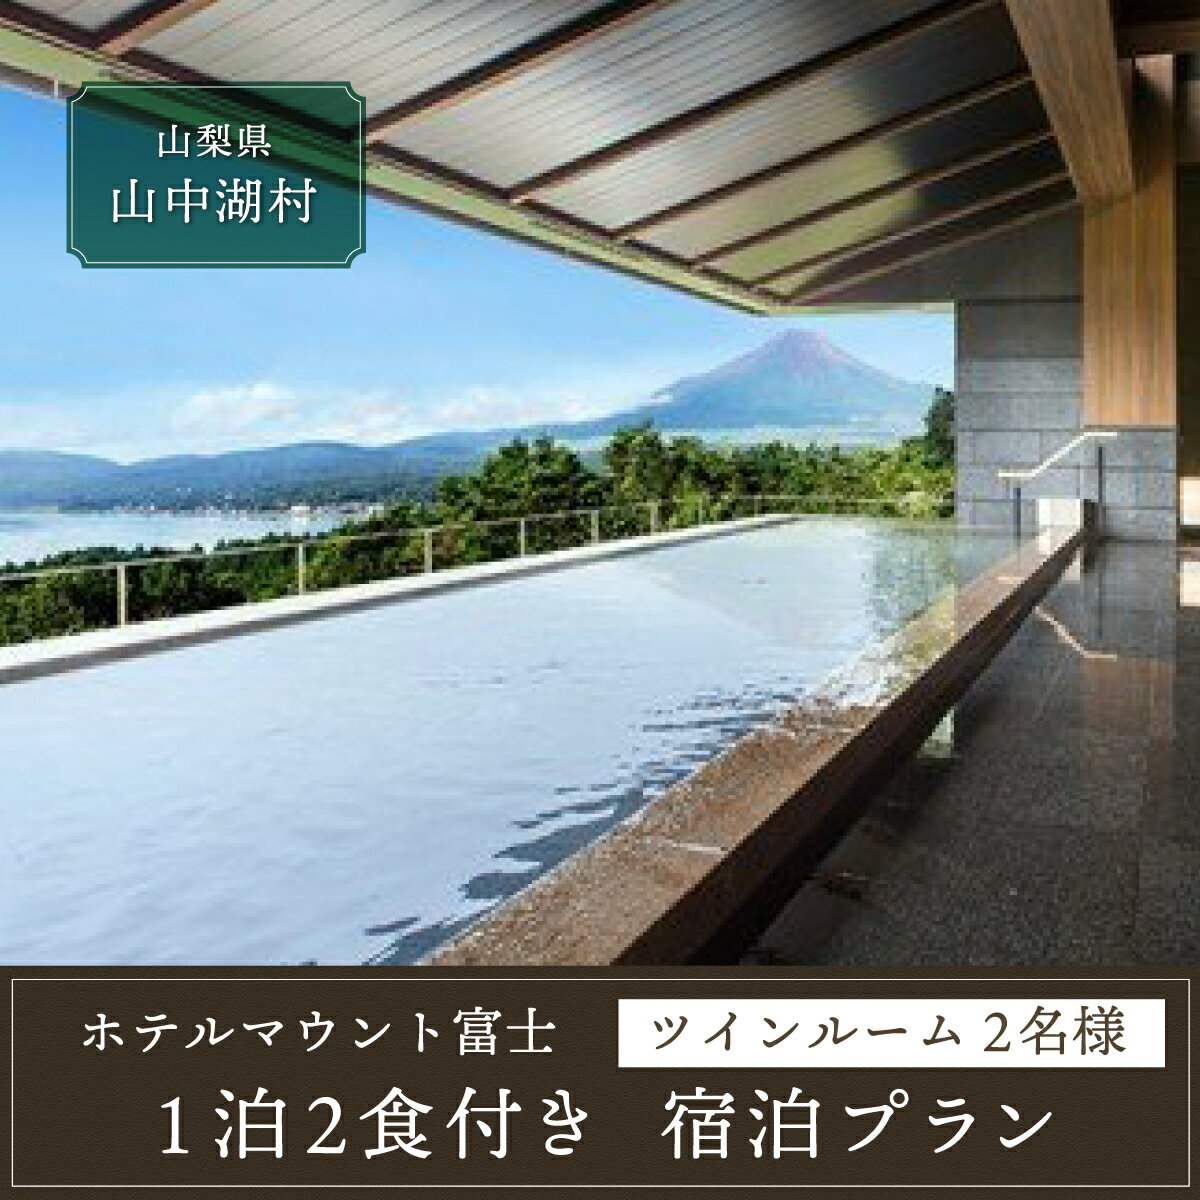 ◆ホテルマウント富士・1泊2食付き宿泊券(2名様分)